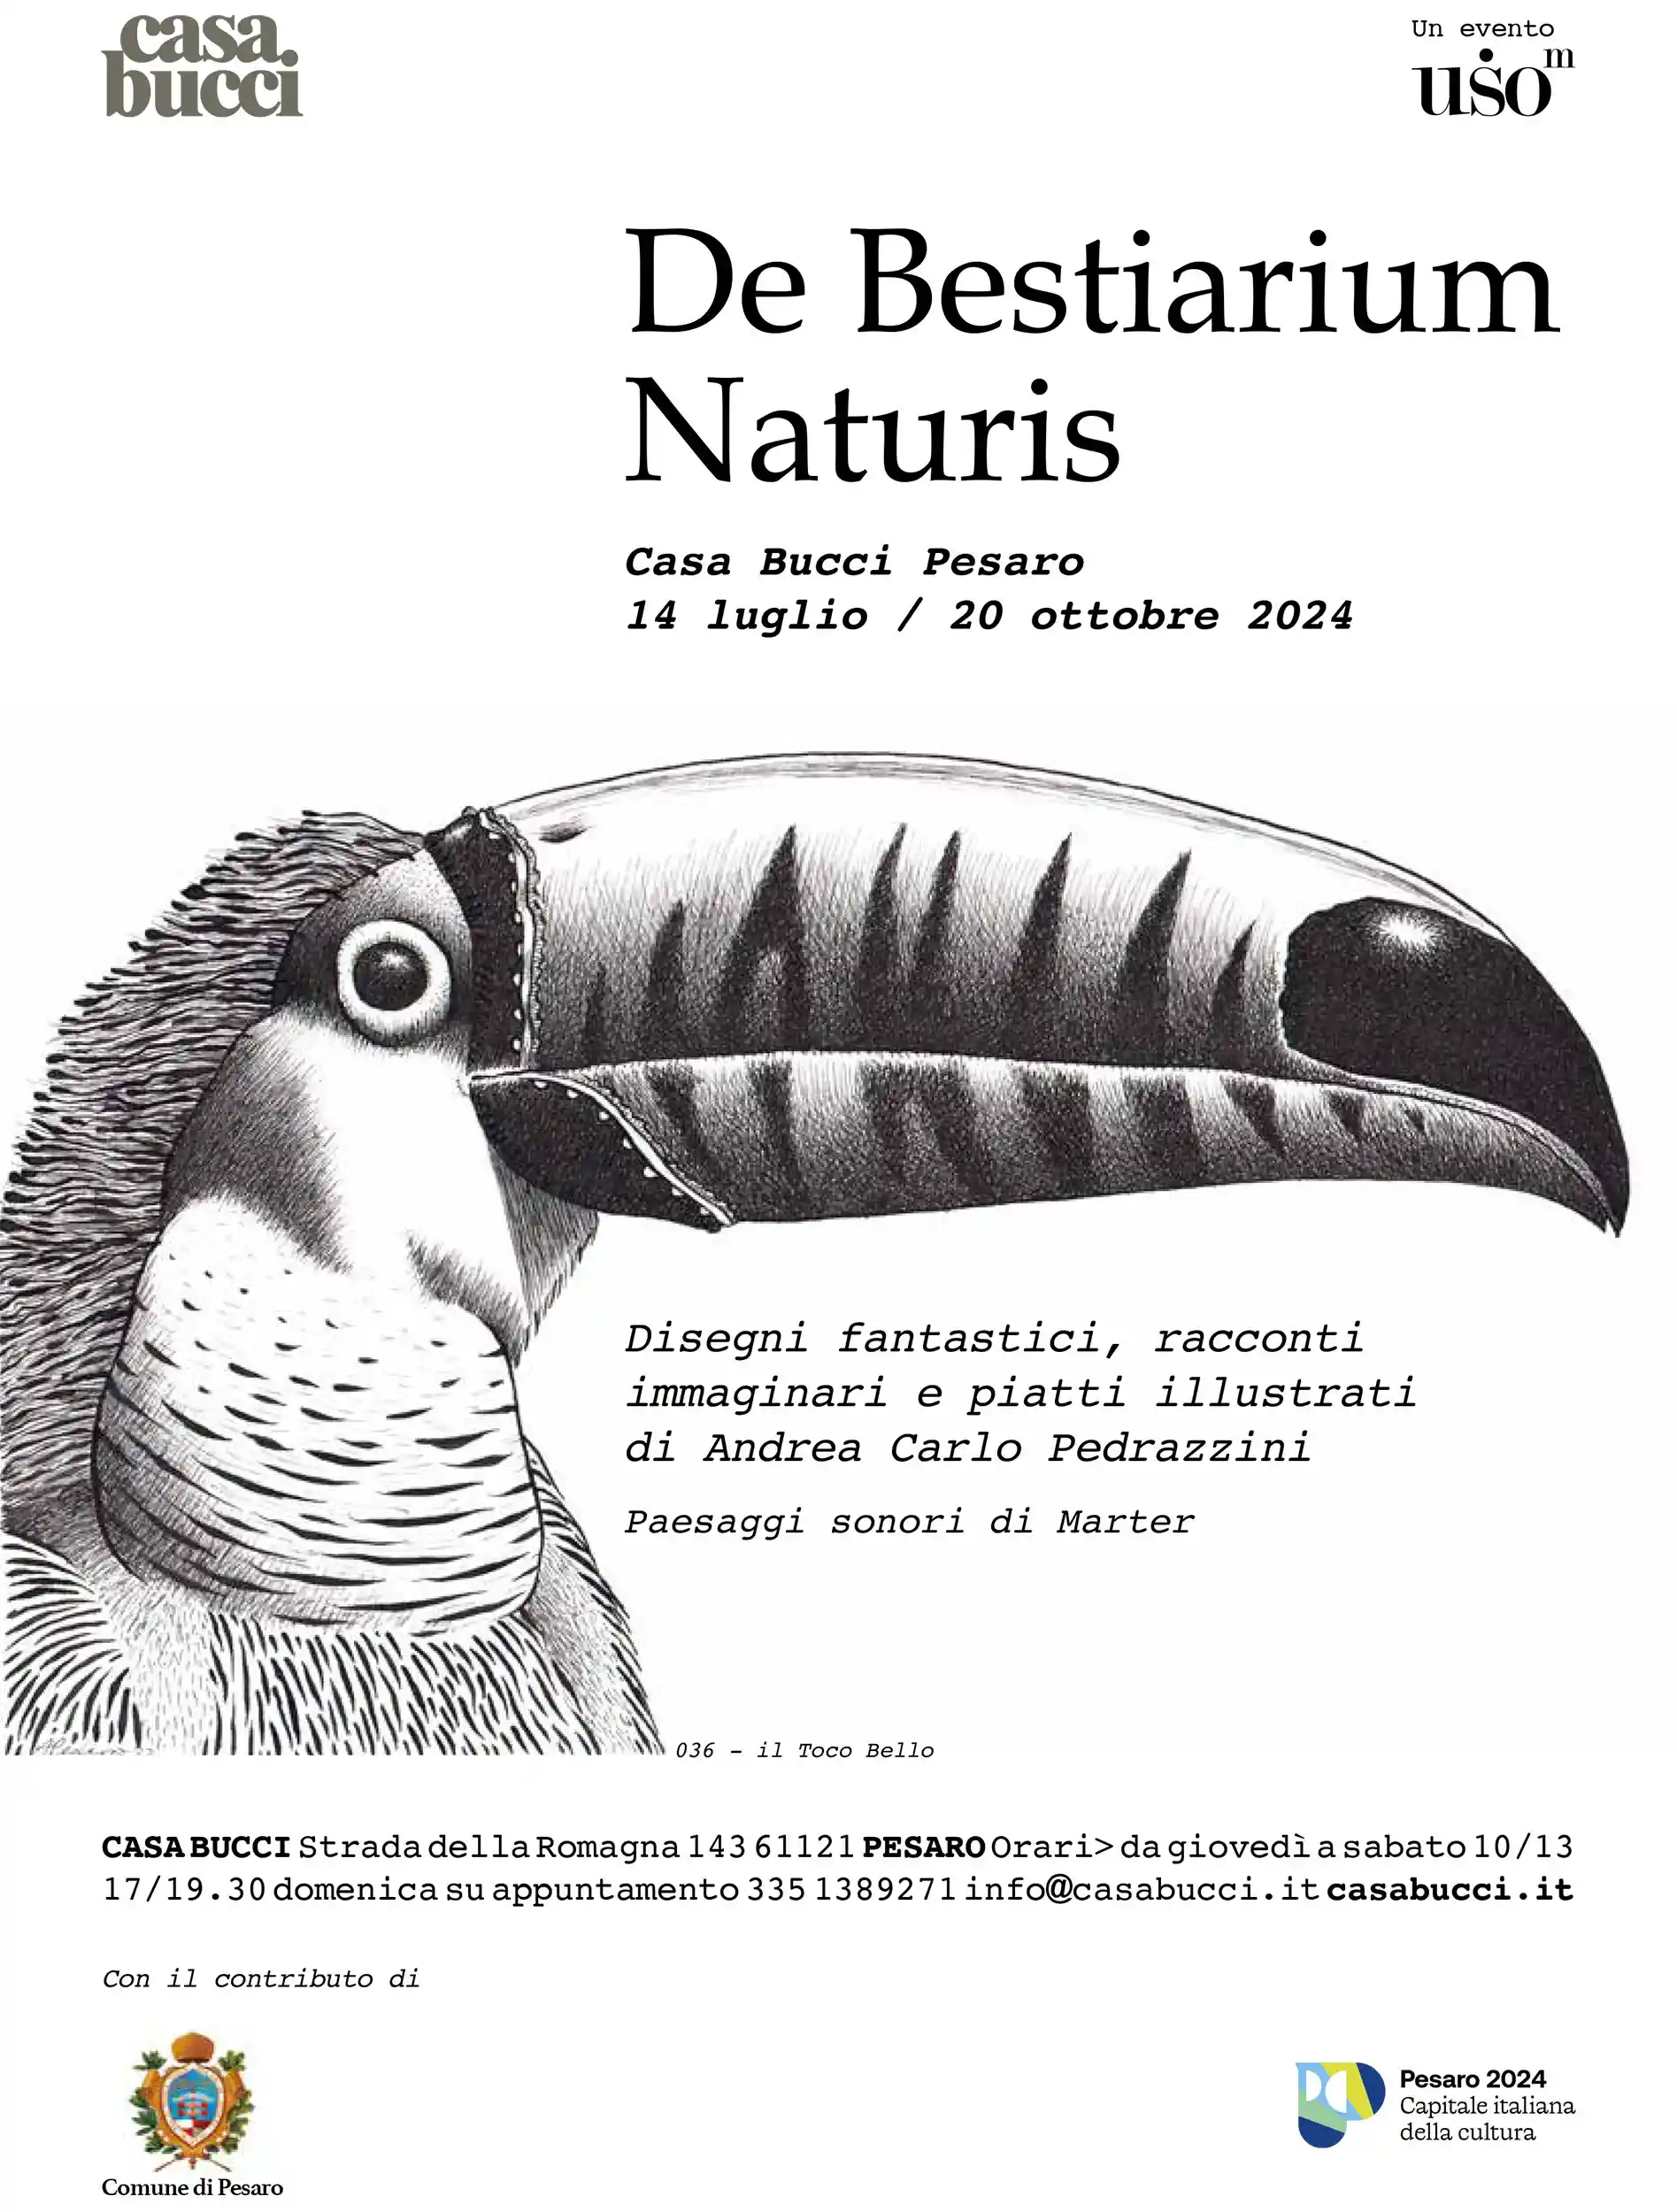 De Bestiarium Naturis: dal 14 luglio al 20 ottobre 2024, scopri la mostra di Andrea Carlo Pedrazzini a Casa Bucci, Pesaro.